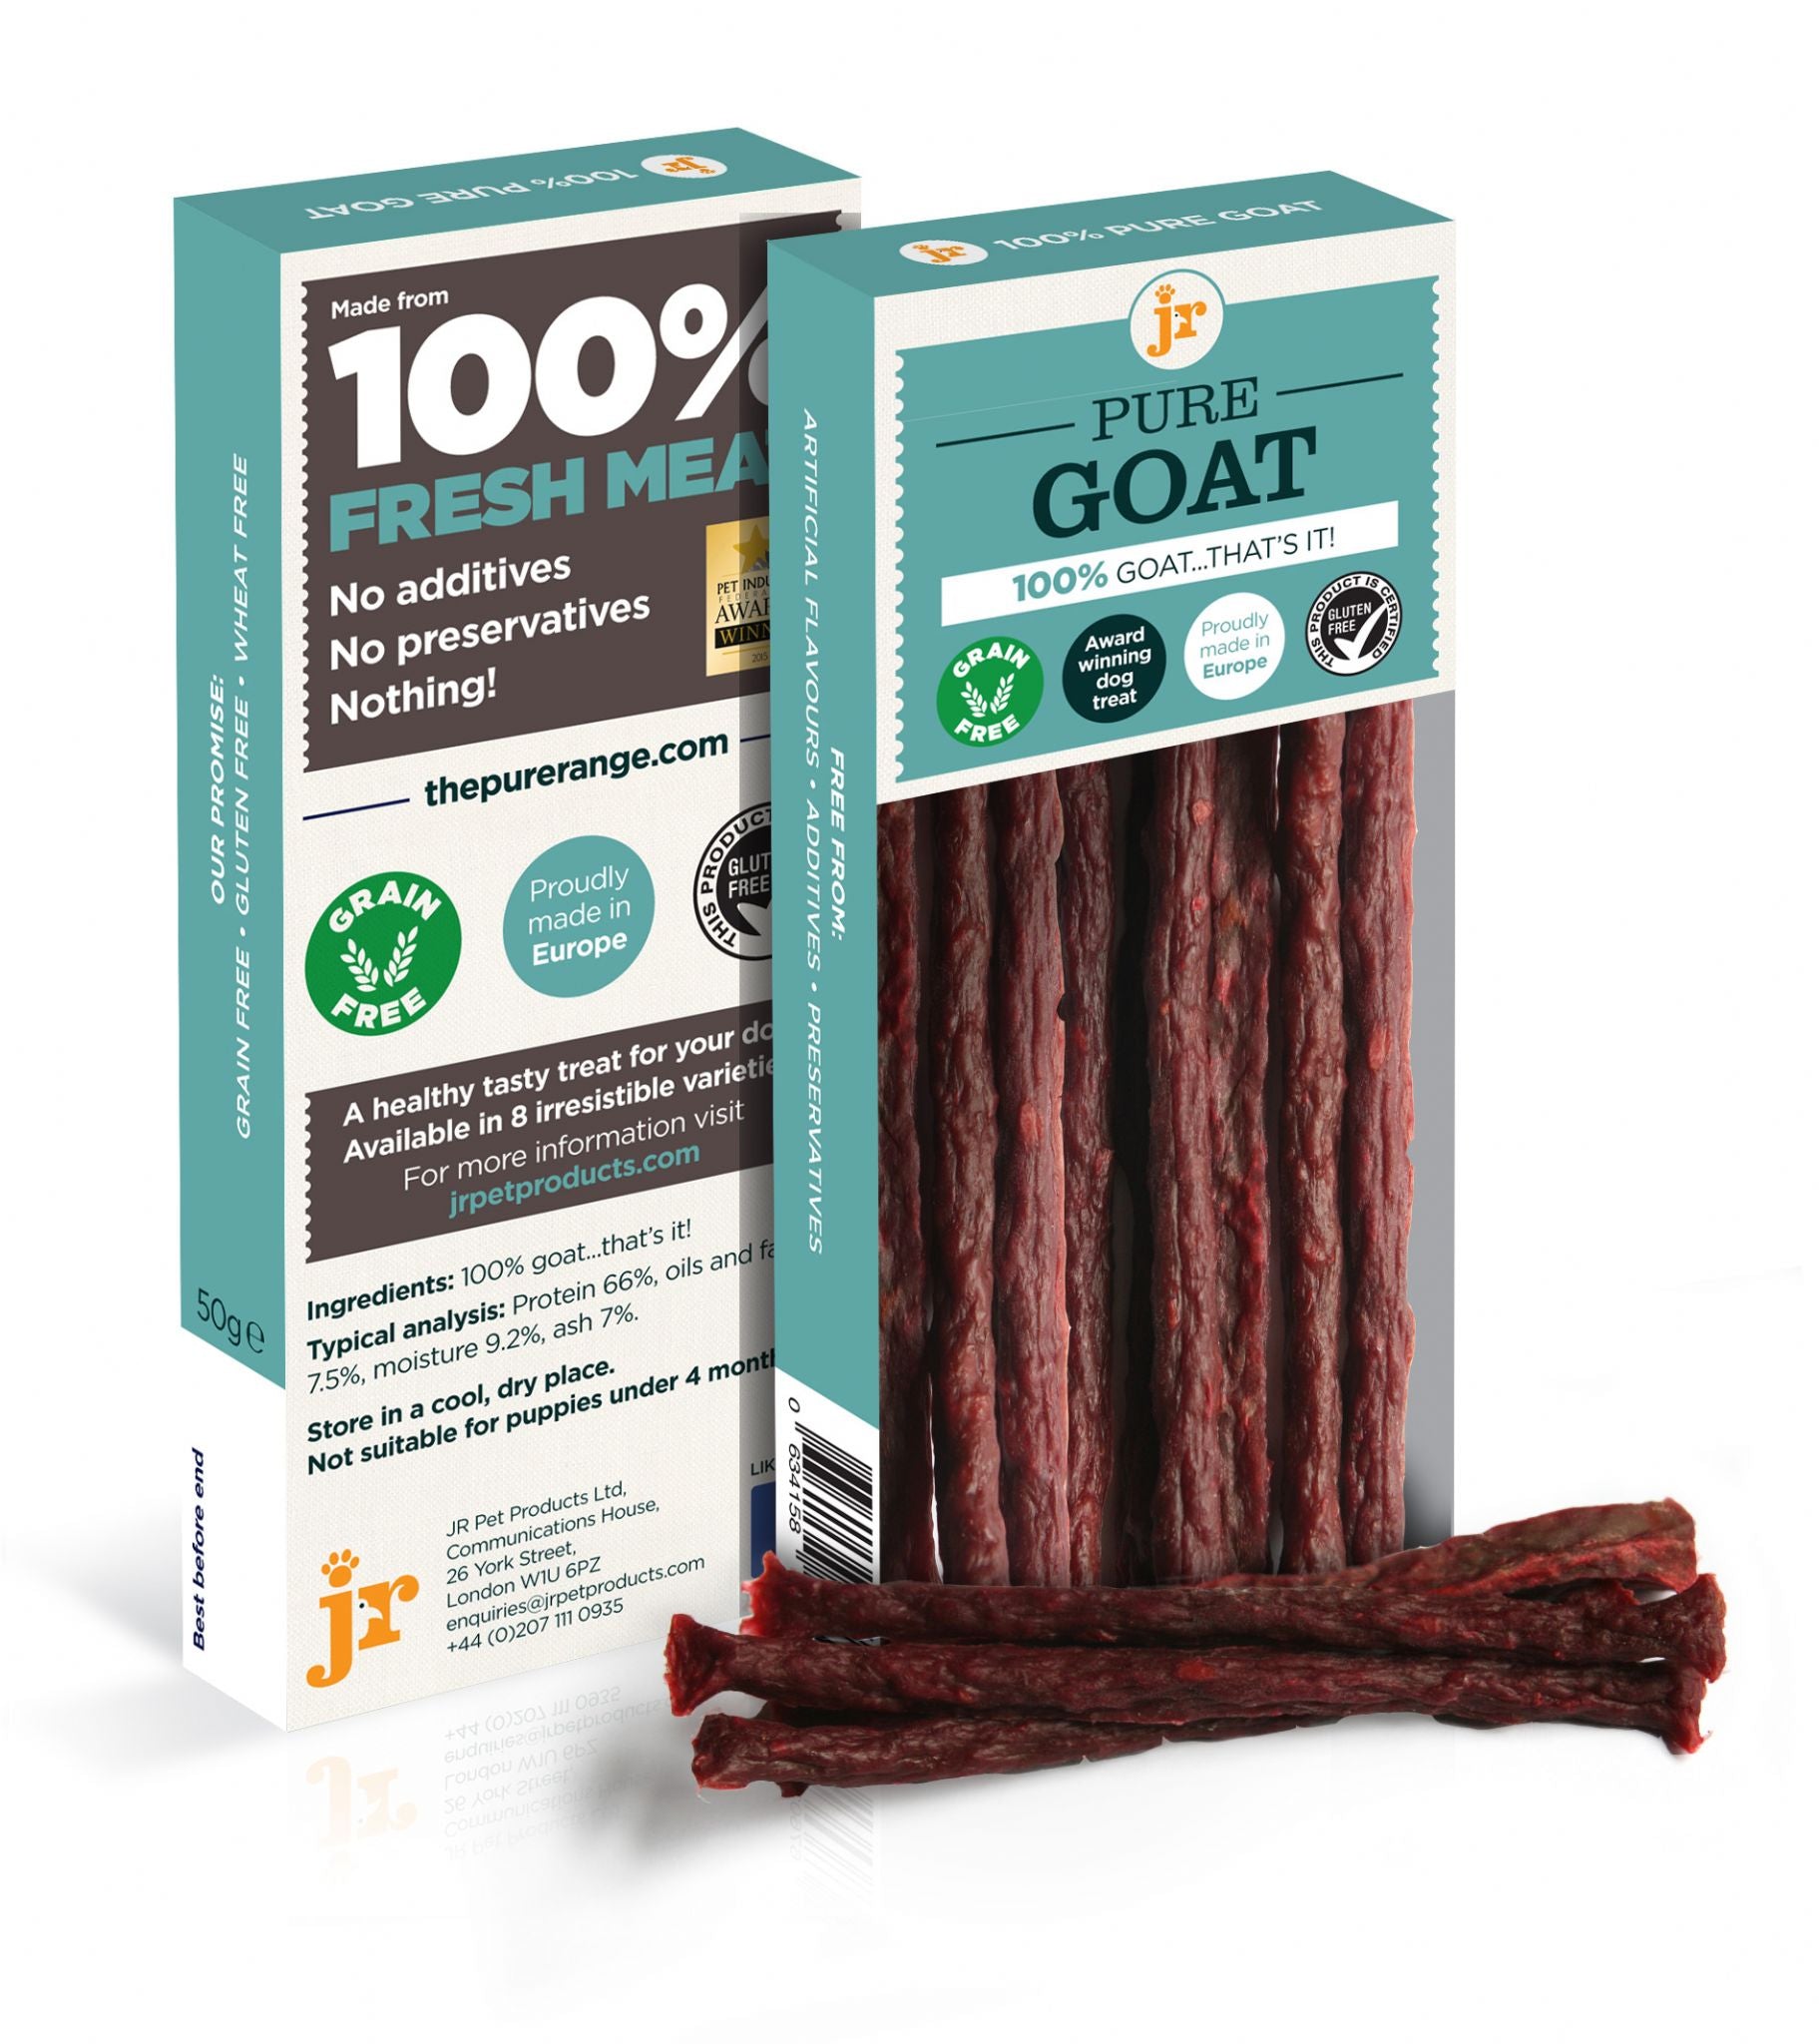 PRODUCT FOCUS: JR Pure Goat Sticks